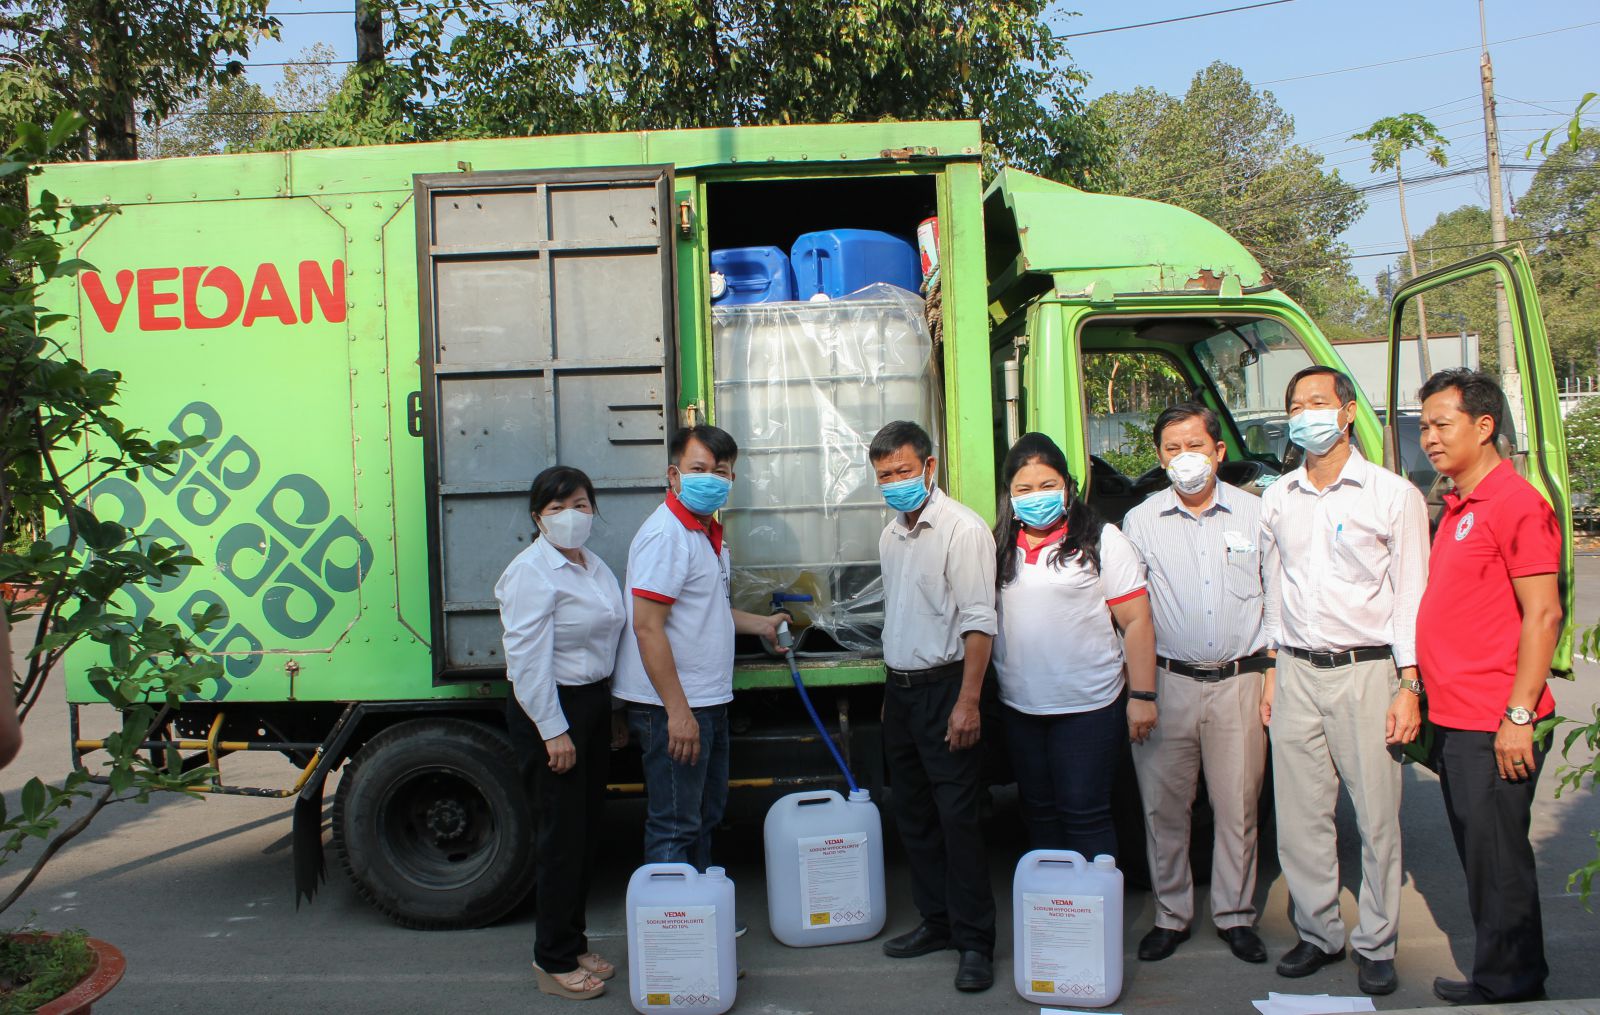 Vedan Việt Nam đồng hành cùng Hội Chữ thập đỏ huyện Long Thành phun xịt, tẩy rửa, khử trùng bao gồm các cấp Mầm non, Tiểu học, Trung học Cơ sở trên địa bàn